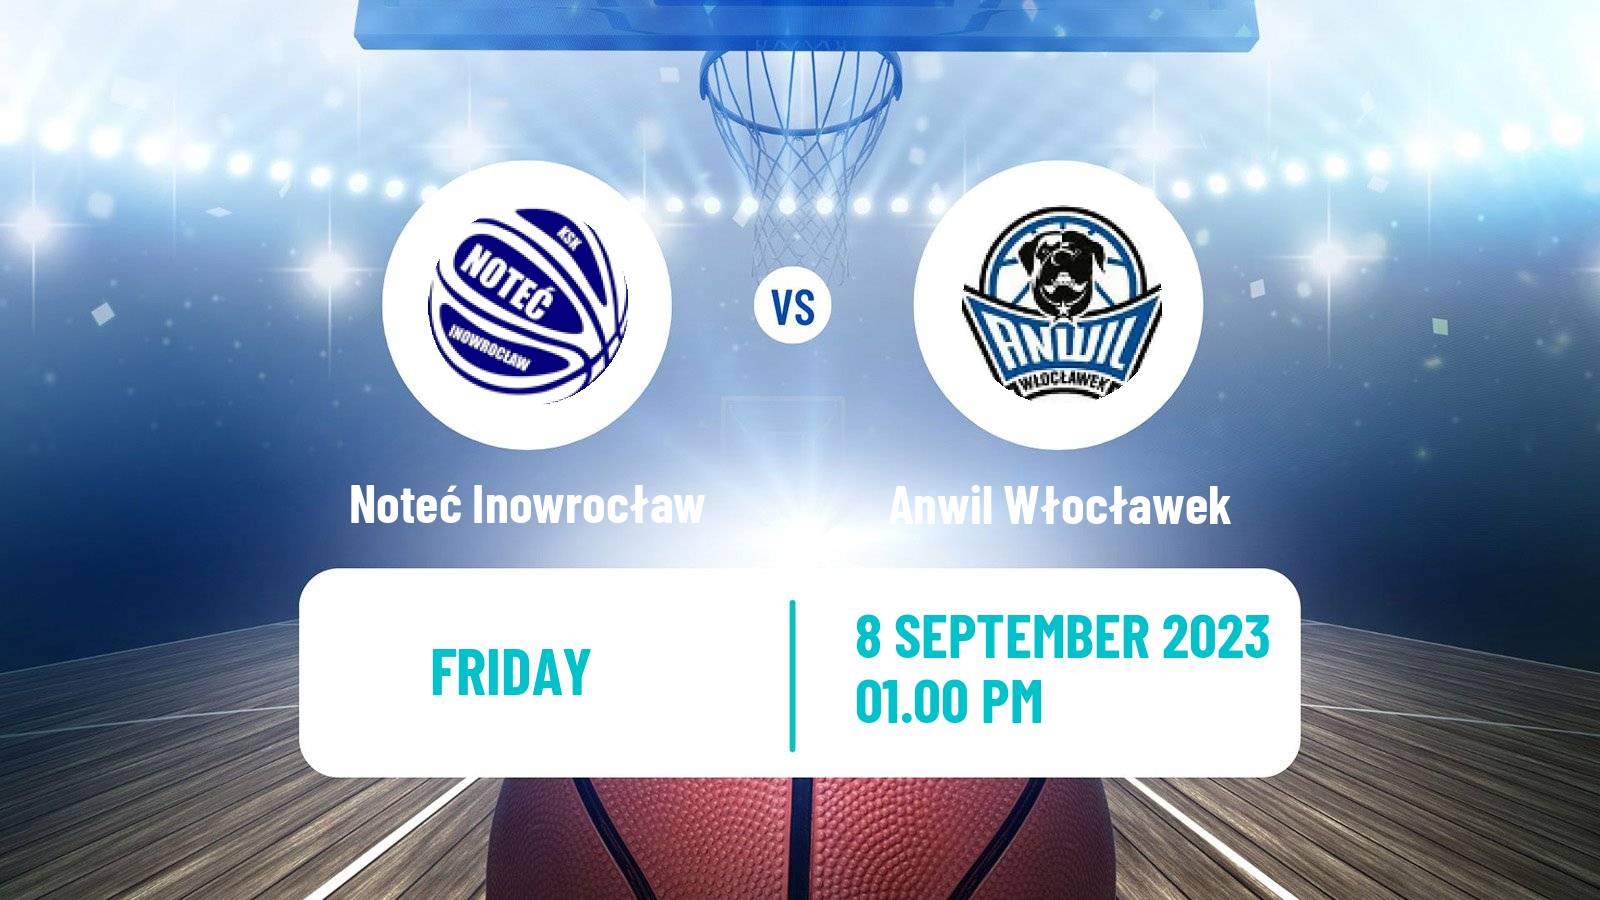 Basketball Club Friendly Basketball Noteć Inowrocław - Anwil Włocławek